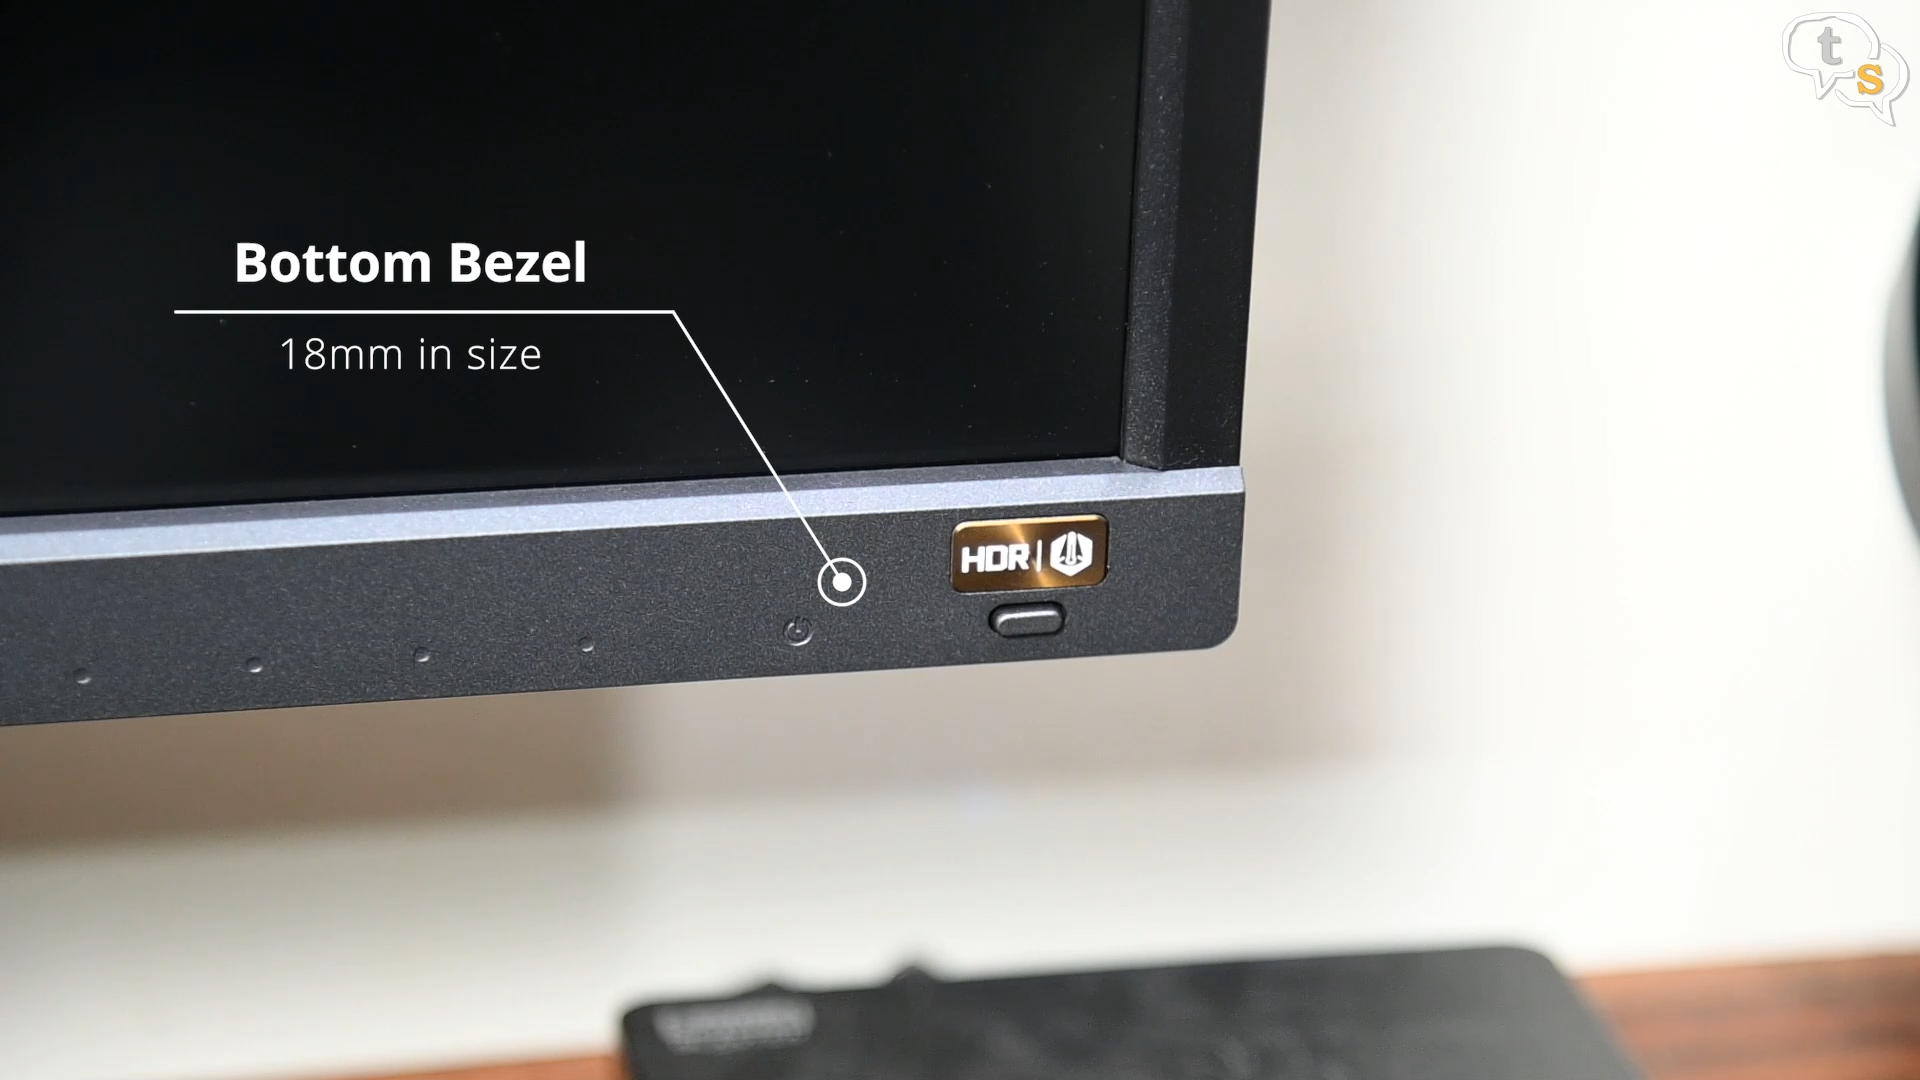 BenQ EW3270U 4K HDR monitor Bezels